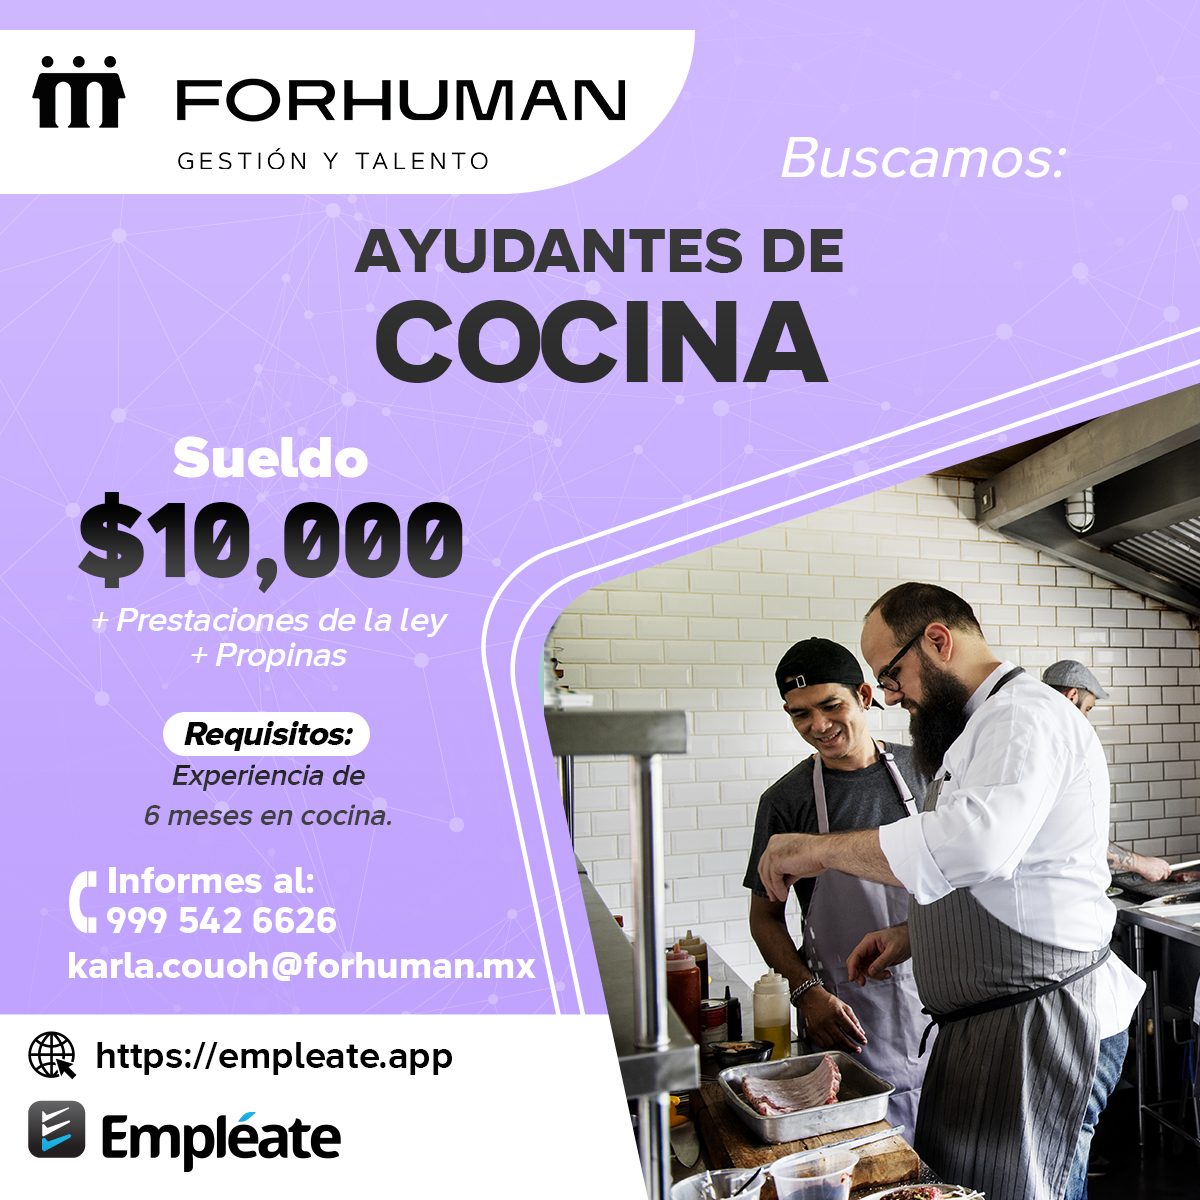 En Empléate puedes postularte cómo Ayudante de Cocina para ForHuman